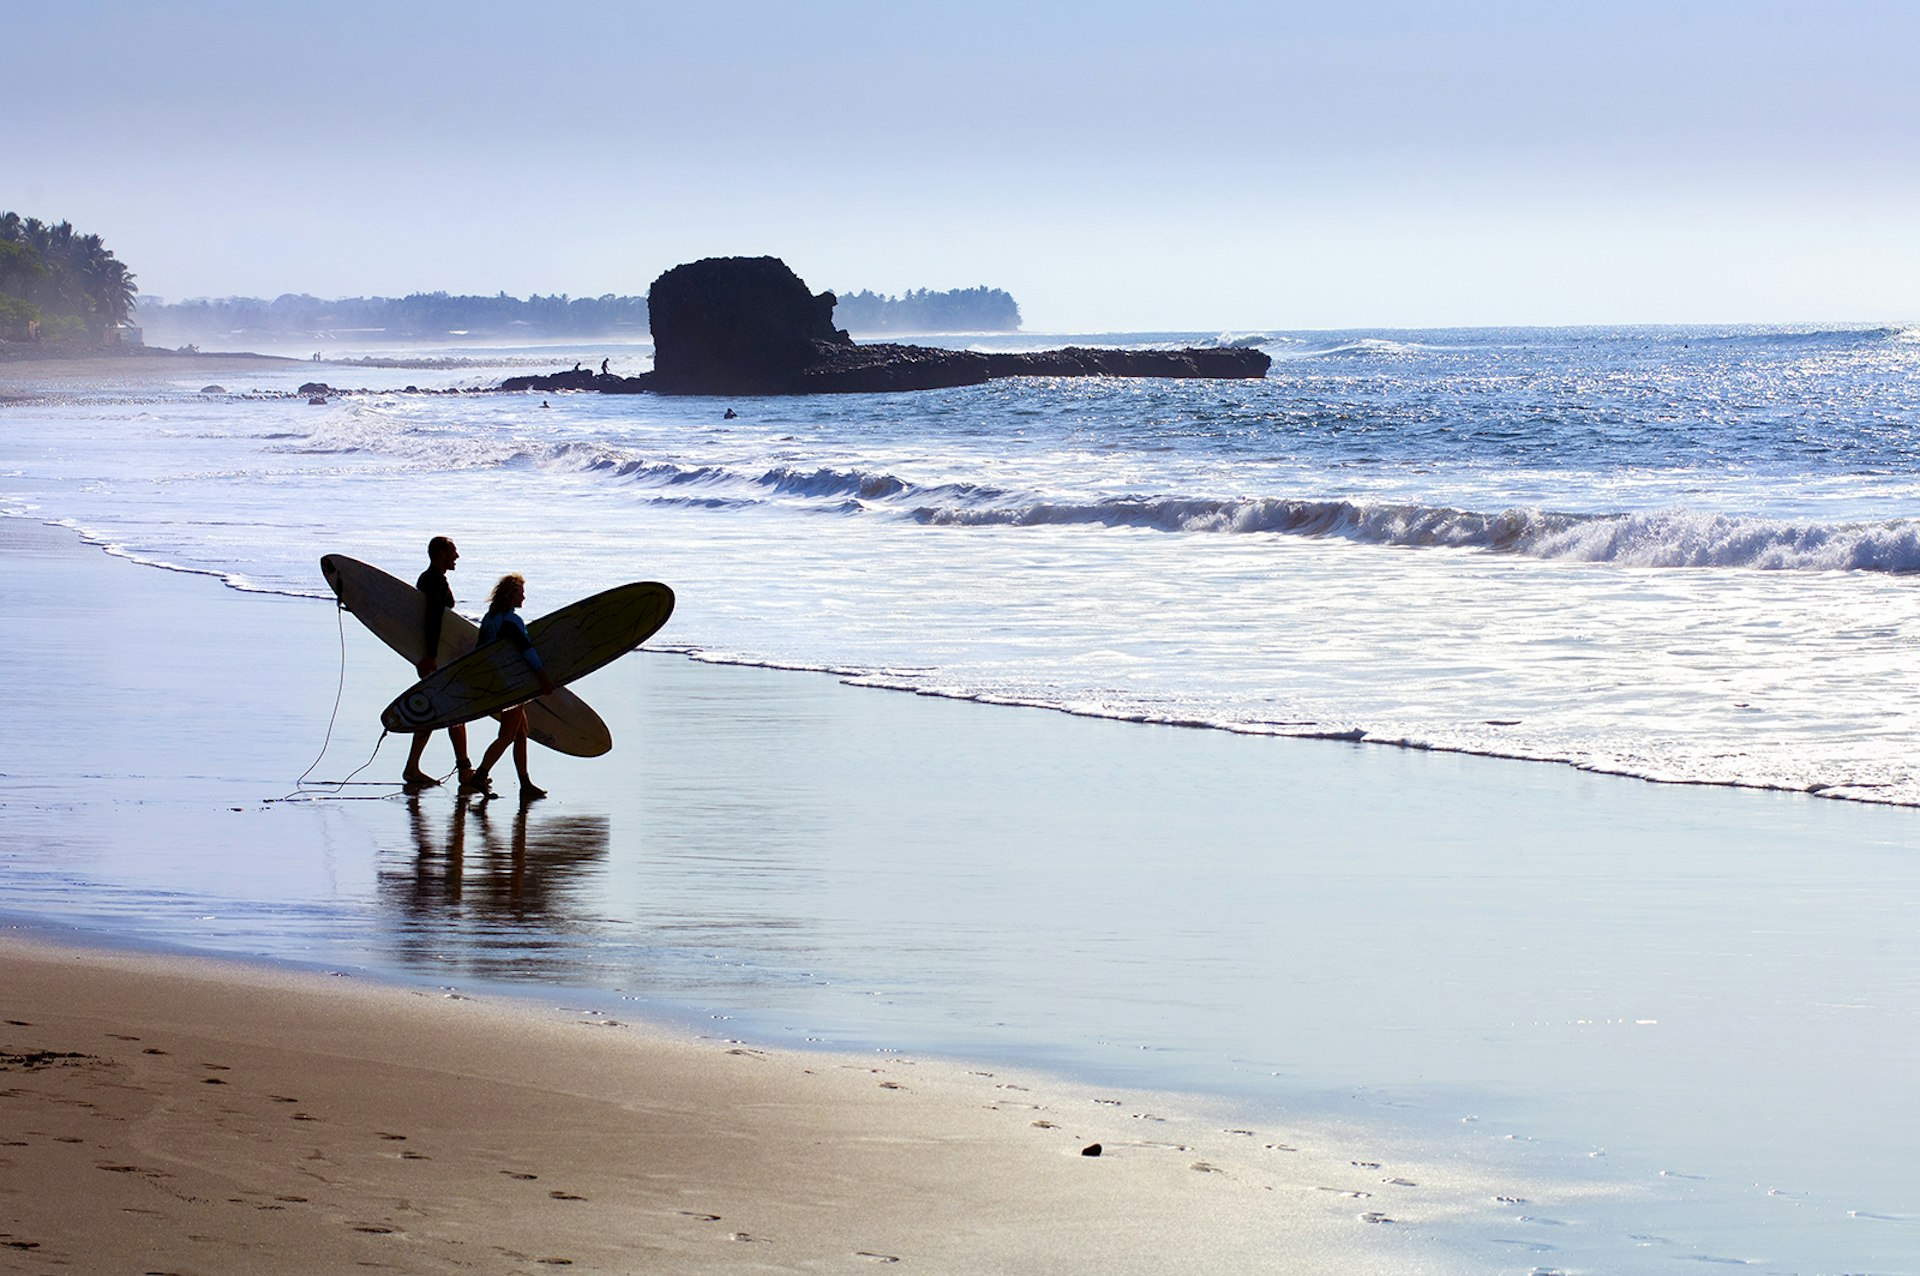 Features - El Salvador, Playa El Tunco, Surfers with boards at Pacific Ocean beach